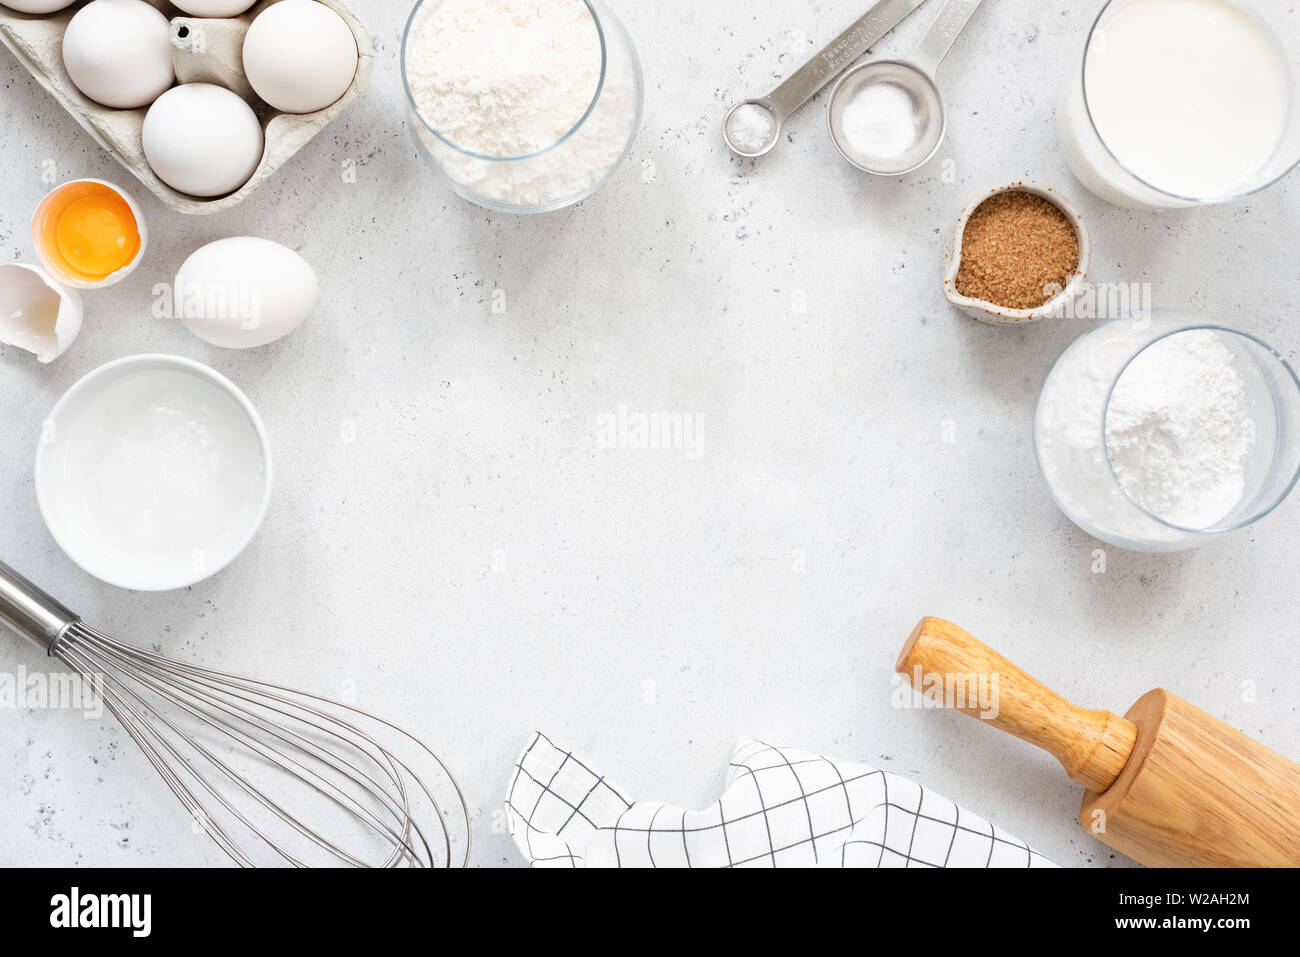 Cadre de la boulangerie et pâtisserie et gâteaux de pain cuisson Ingrédients, sucre farine oeufs lait de coco et du beurre sur fond gris clair avec copie espace pour t Banque D'Images